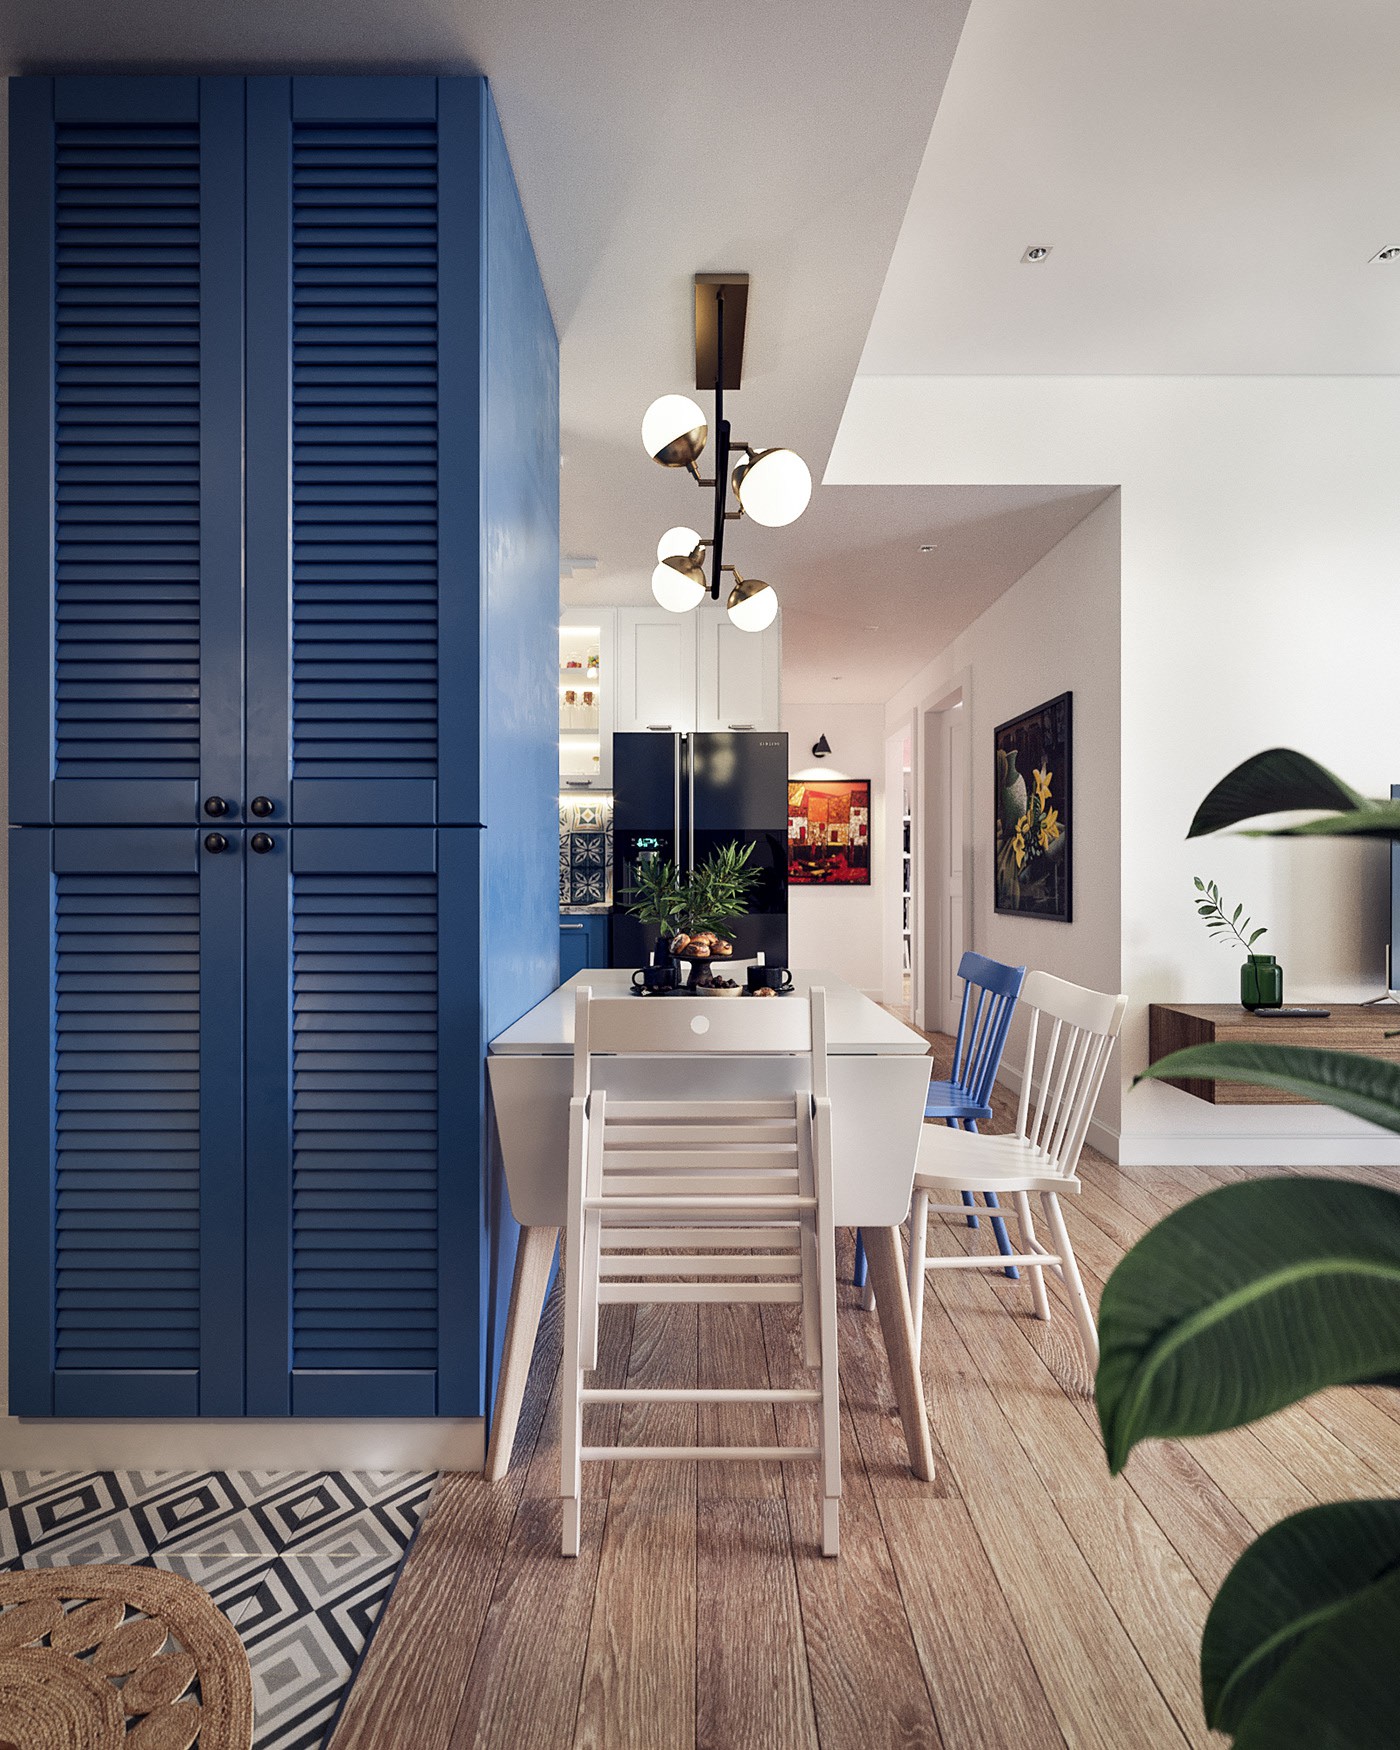 Hình ảnh một góc phòng bếp ăn với tủ lưu trữ kịch trần màu xanh dương, bàn ăn dạng gấp, đèn thả, cây xanh